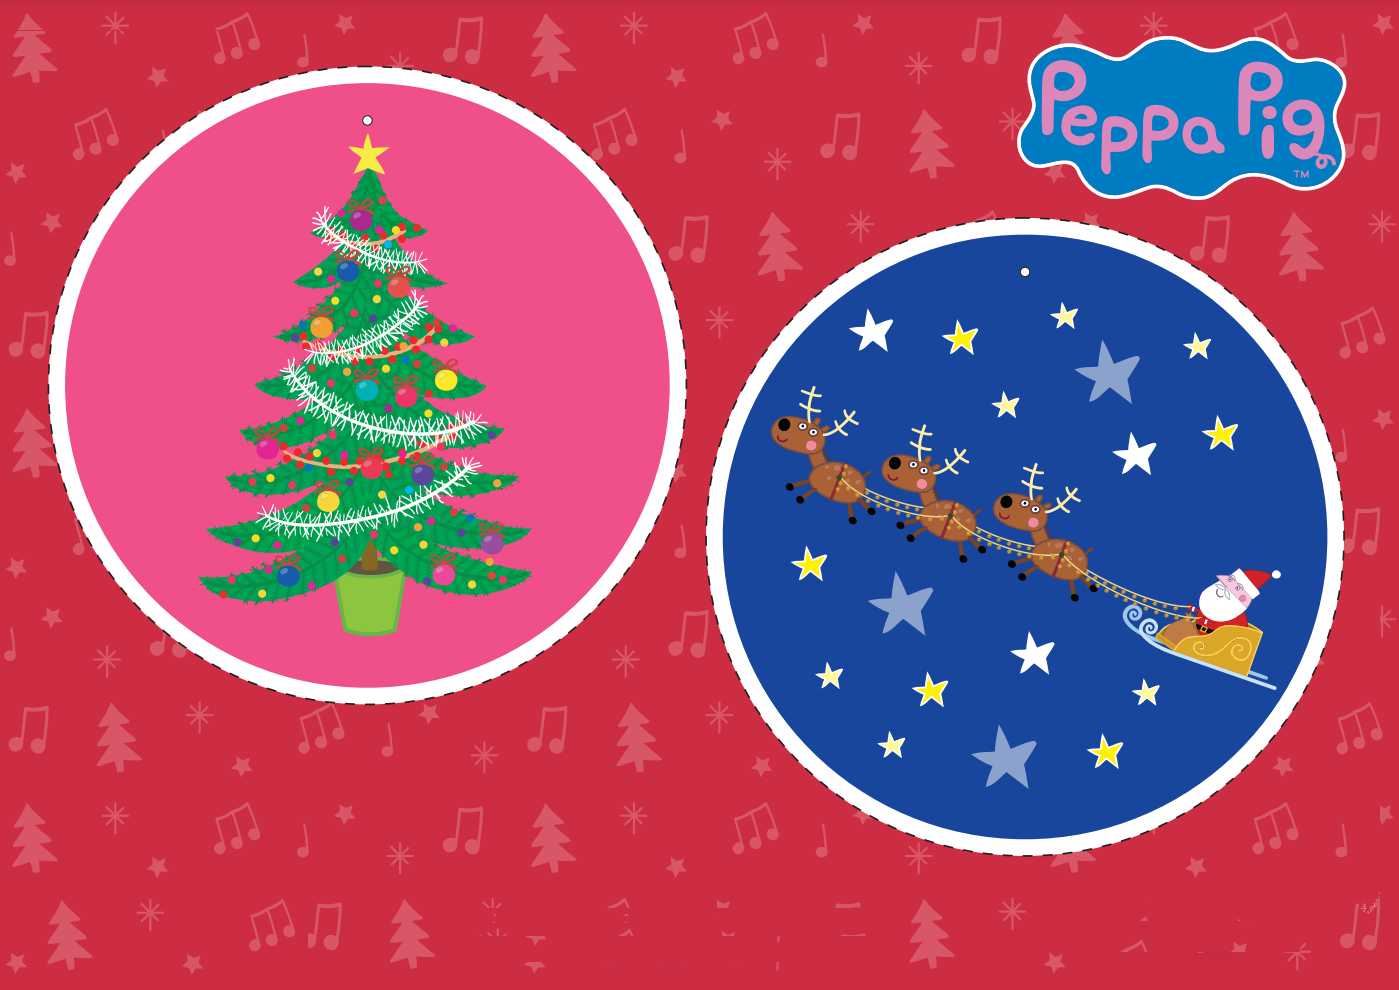 Peppa Pig Christmas Ornaments